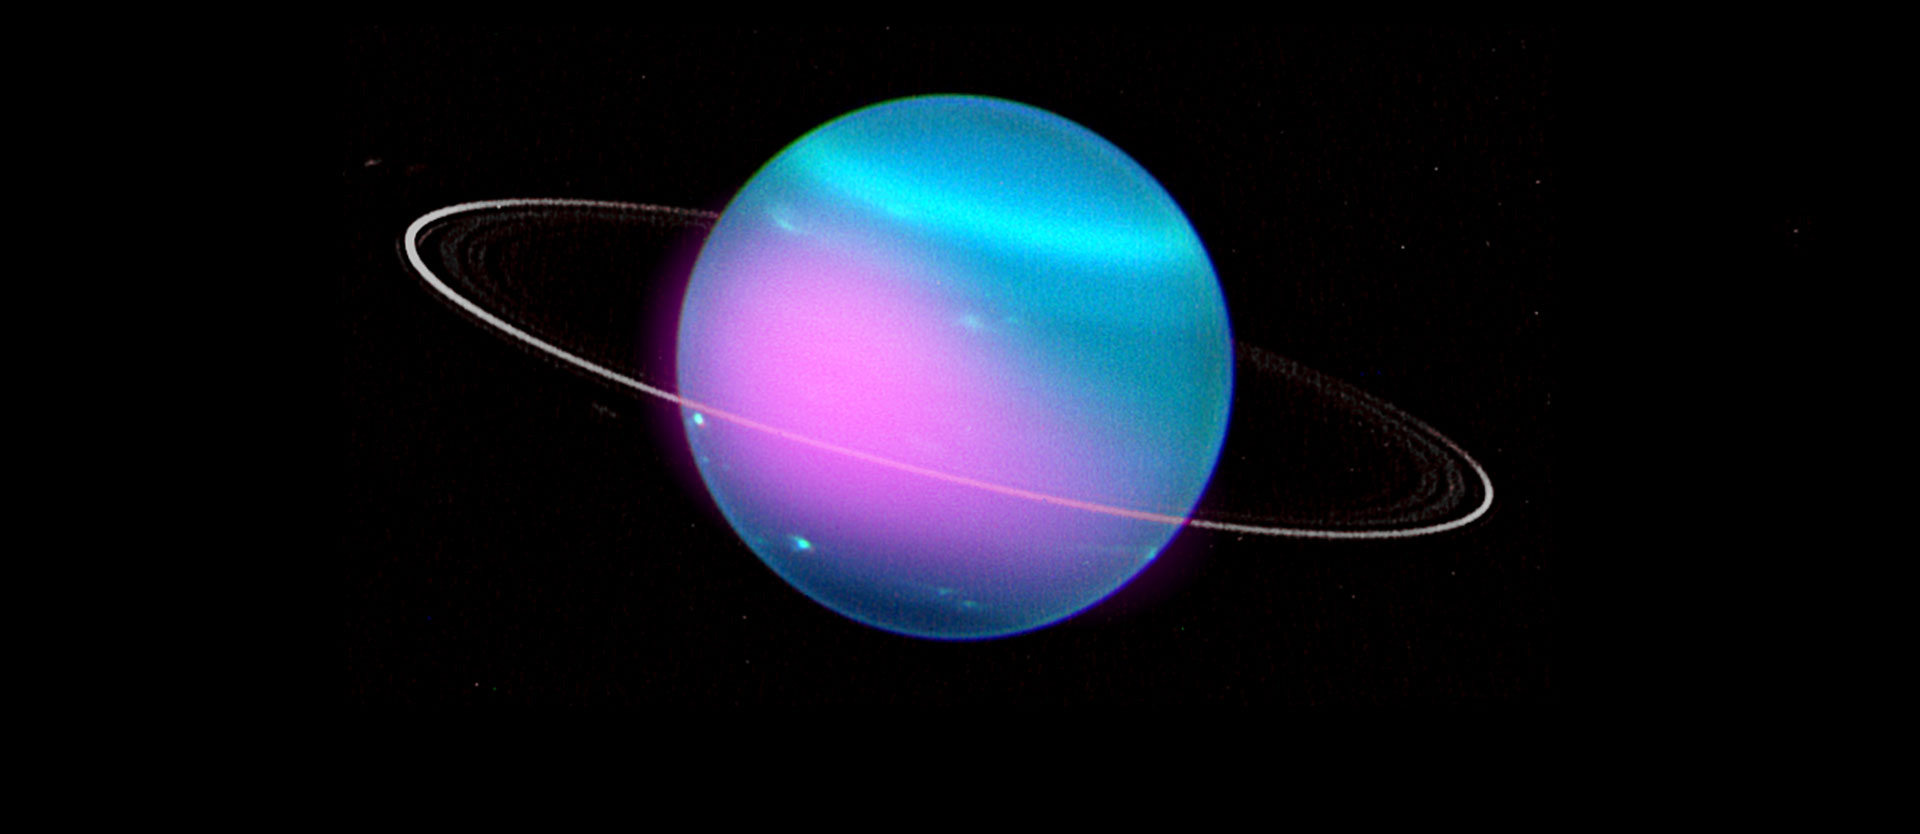 Röntgenlicht vom Uranus